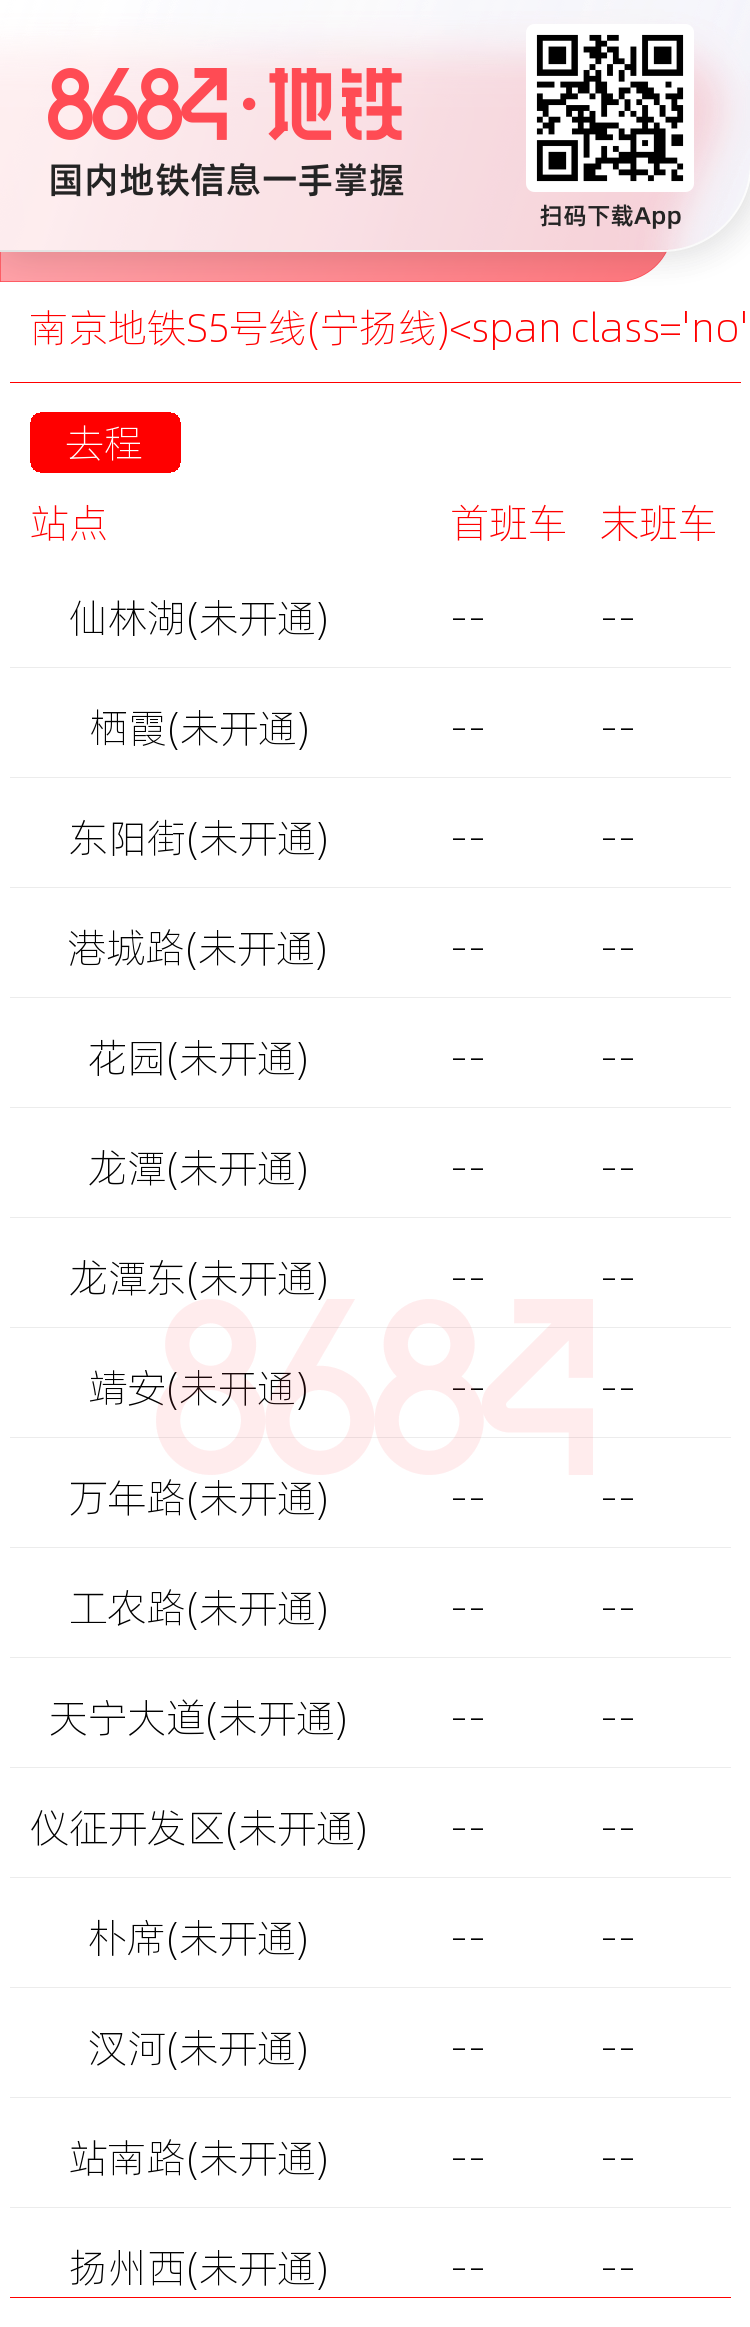 南京地铁S5号线(宁扬线)<span class='no'>(未开通)</span>运营时间表